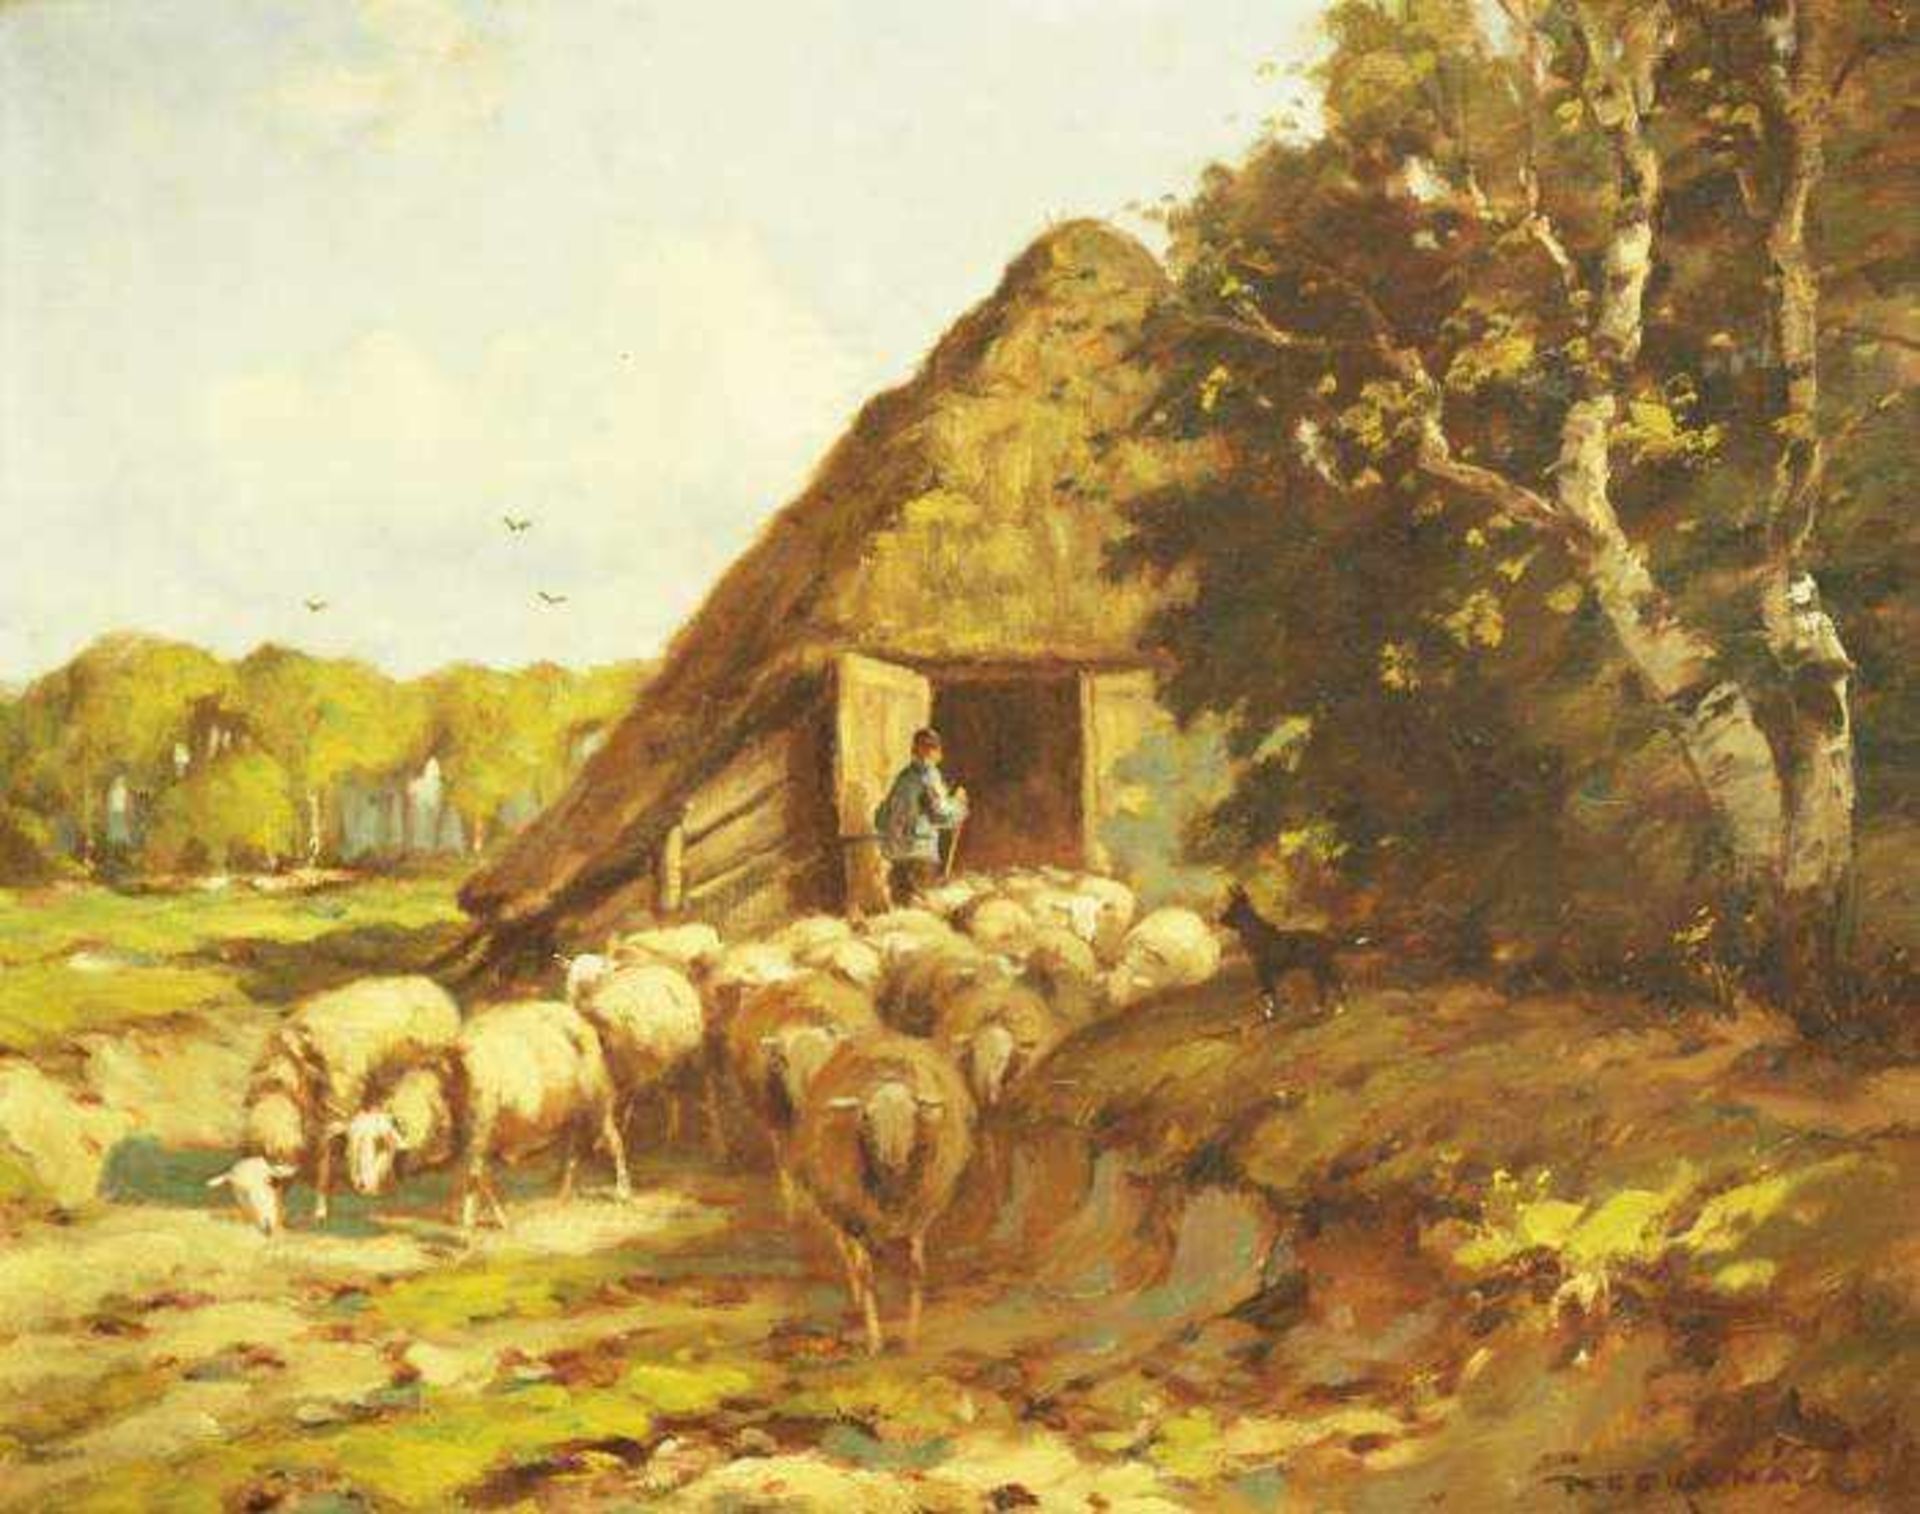 NEFKENS, Martinus Jacobus. NEFKENS, Martinus Jacobus. Niederländischer Maler, 1866 - 1941.